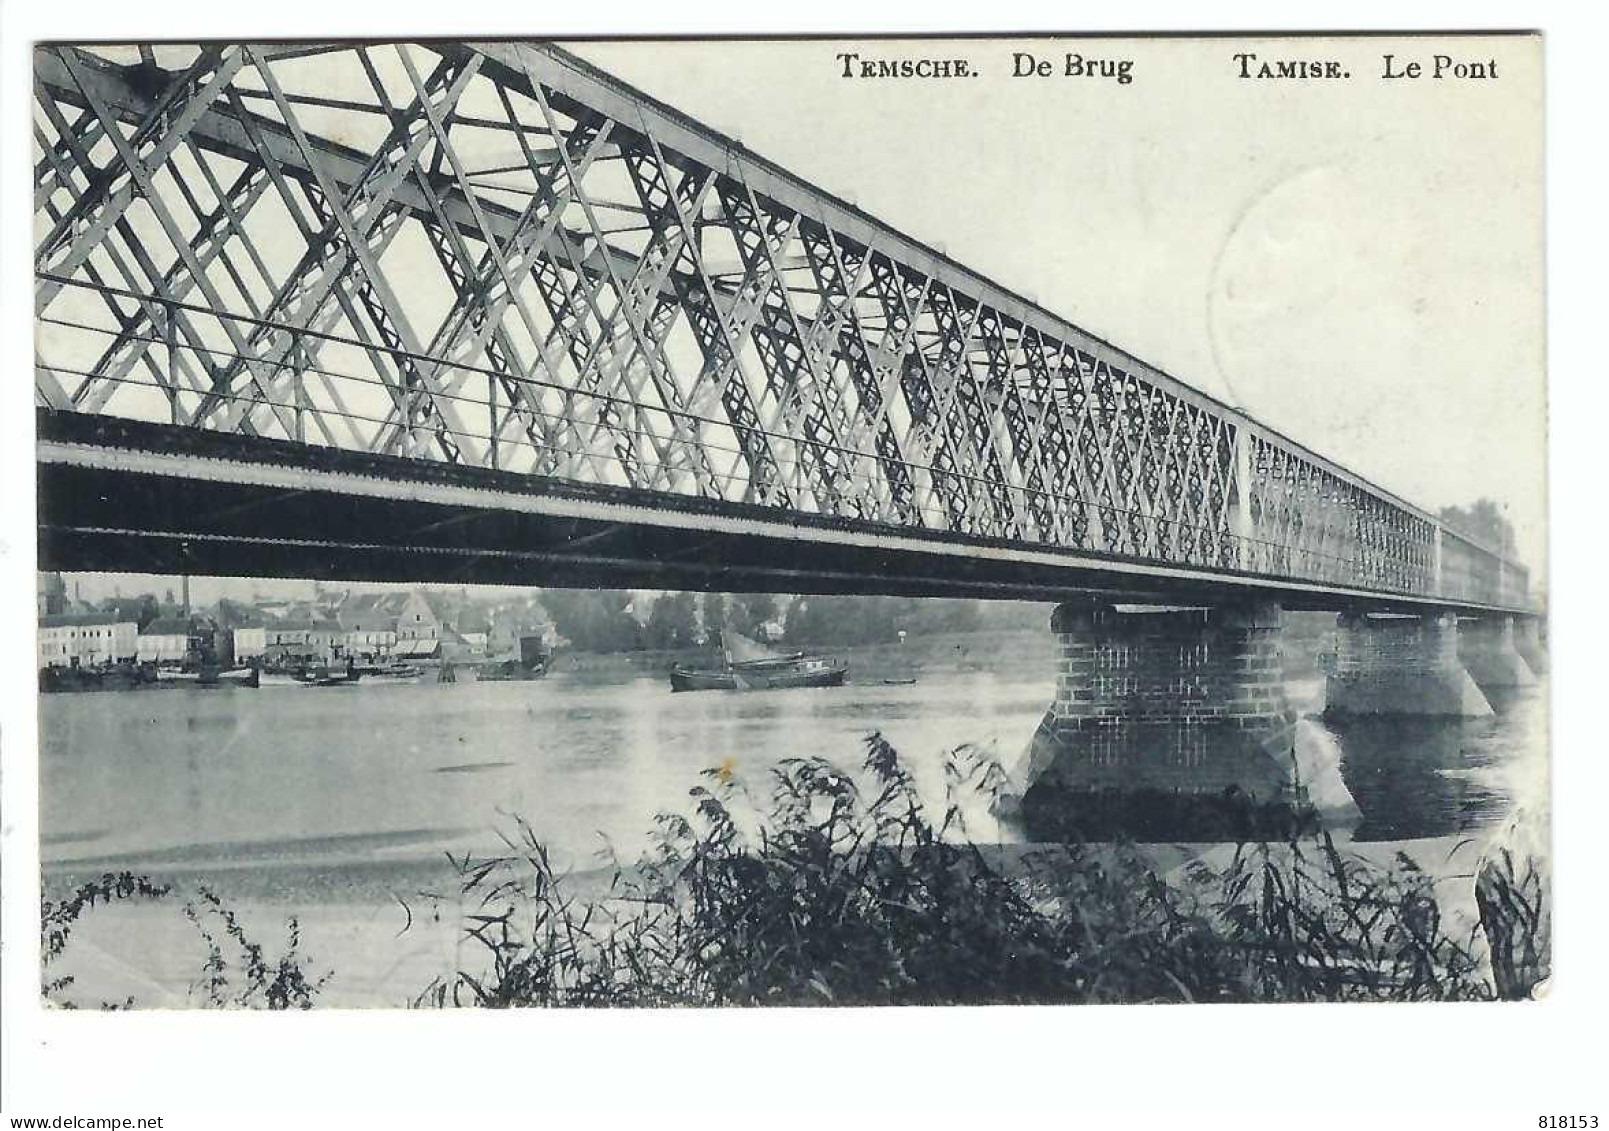 Temse  TEMSCHE  De Brug  TAMISE  Le Pont  1912 - Temse